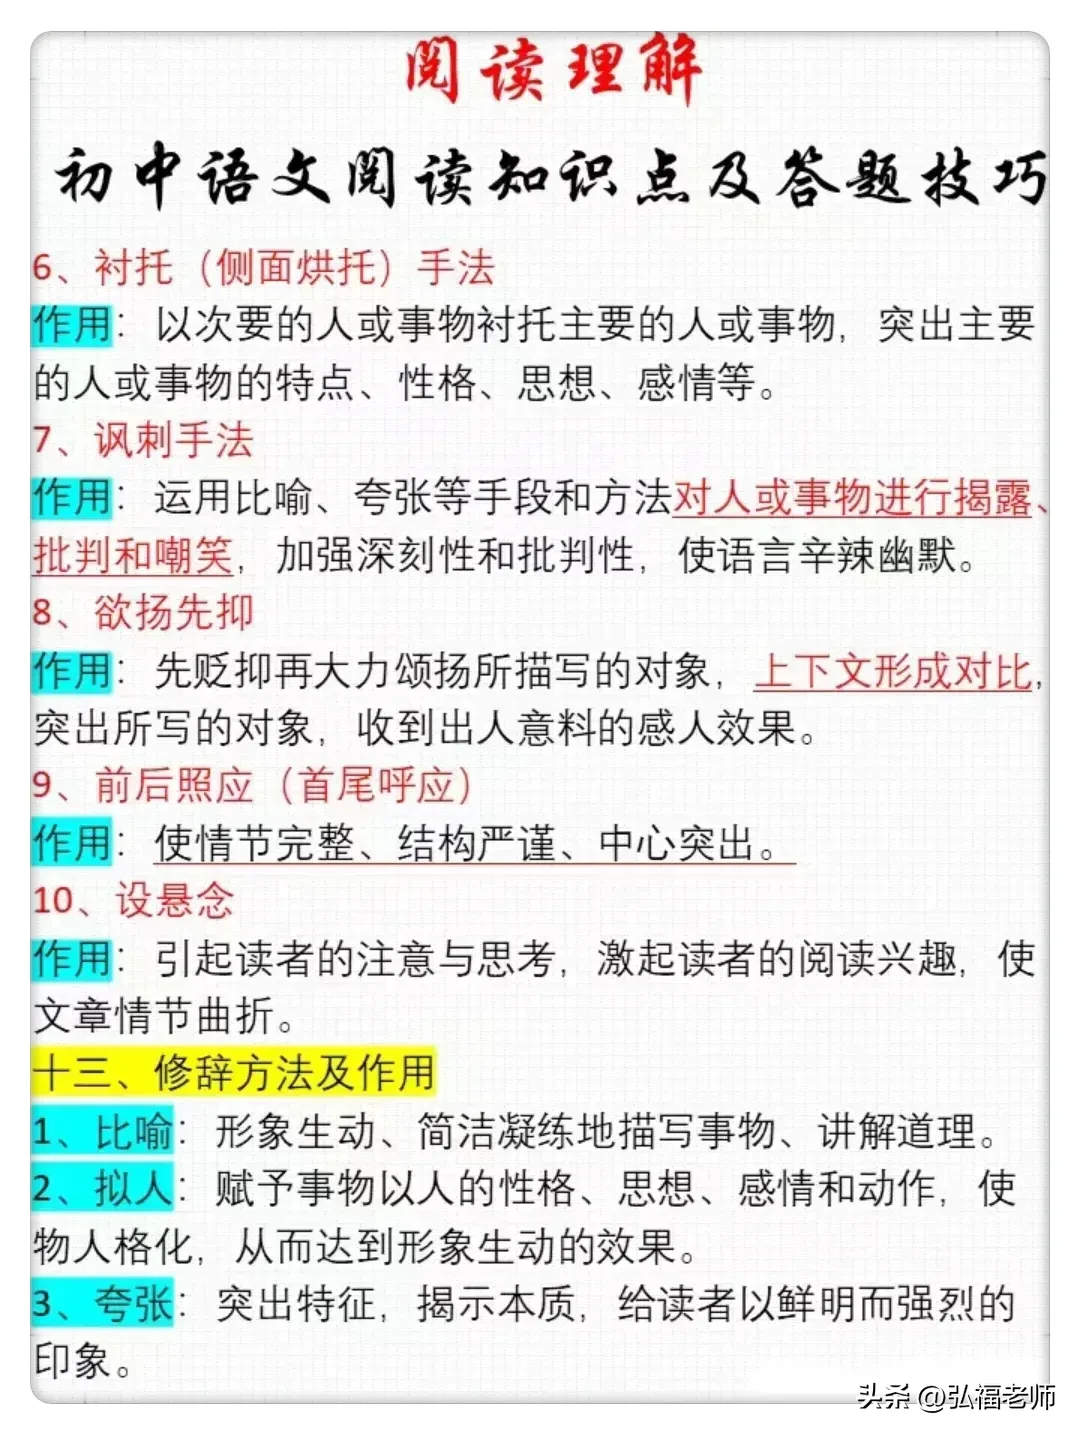 初中语文阅读知识点及答题技巧